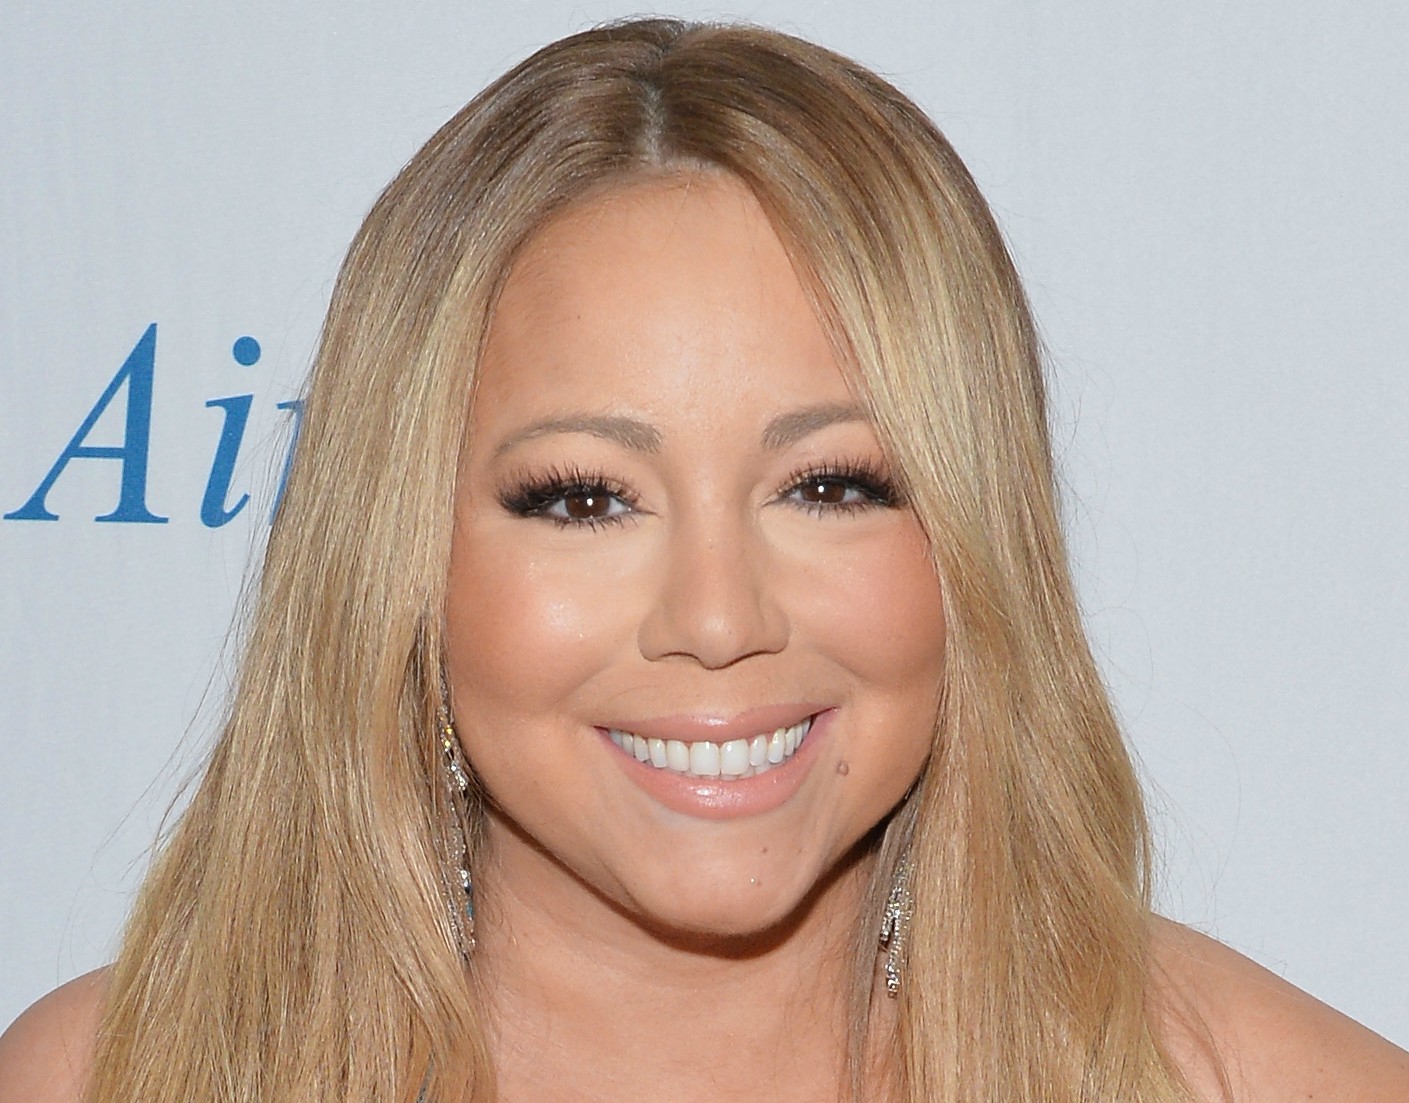 Mariah Carey não revela a idade, mas sabe-se que ela está com 44 ou 45 anos. (Foto: Getty Images)